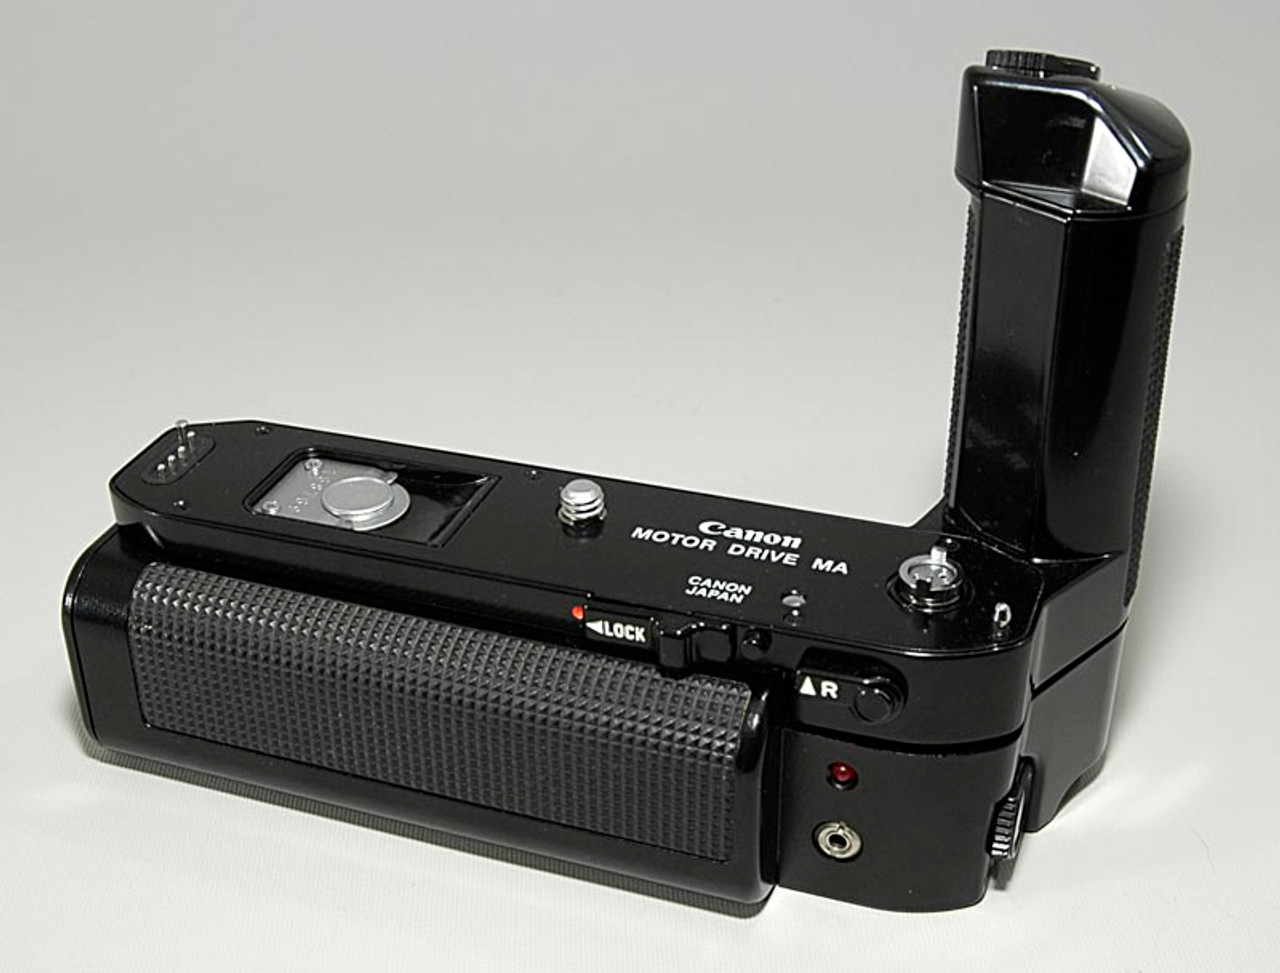 Canon A-1 モータードライブMA データパック付きく - カメラ